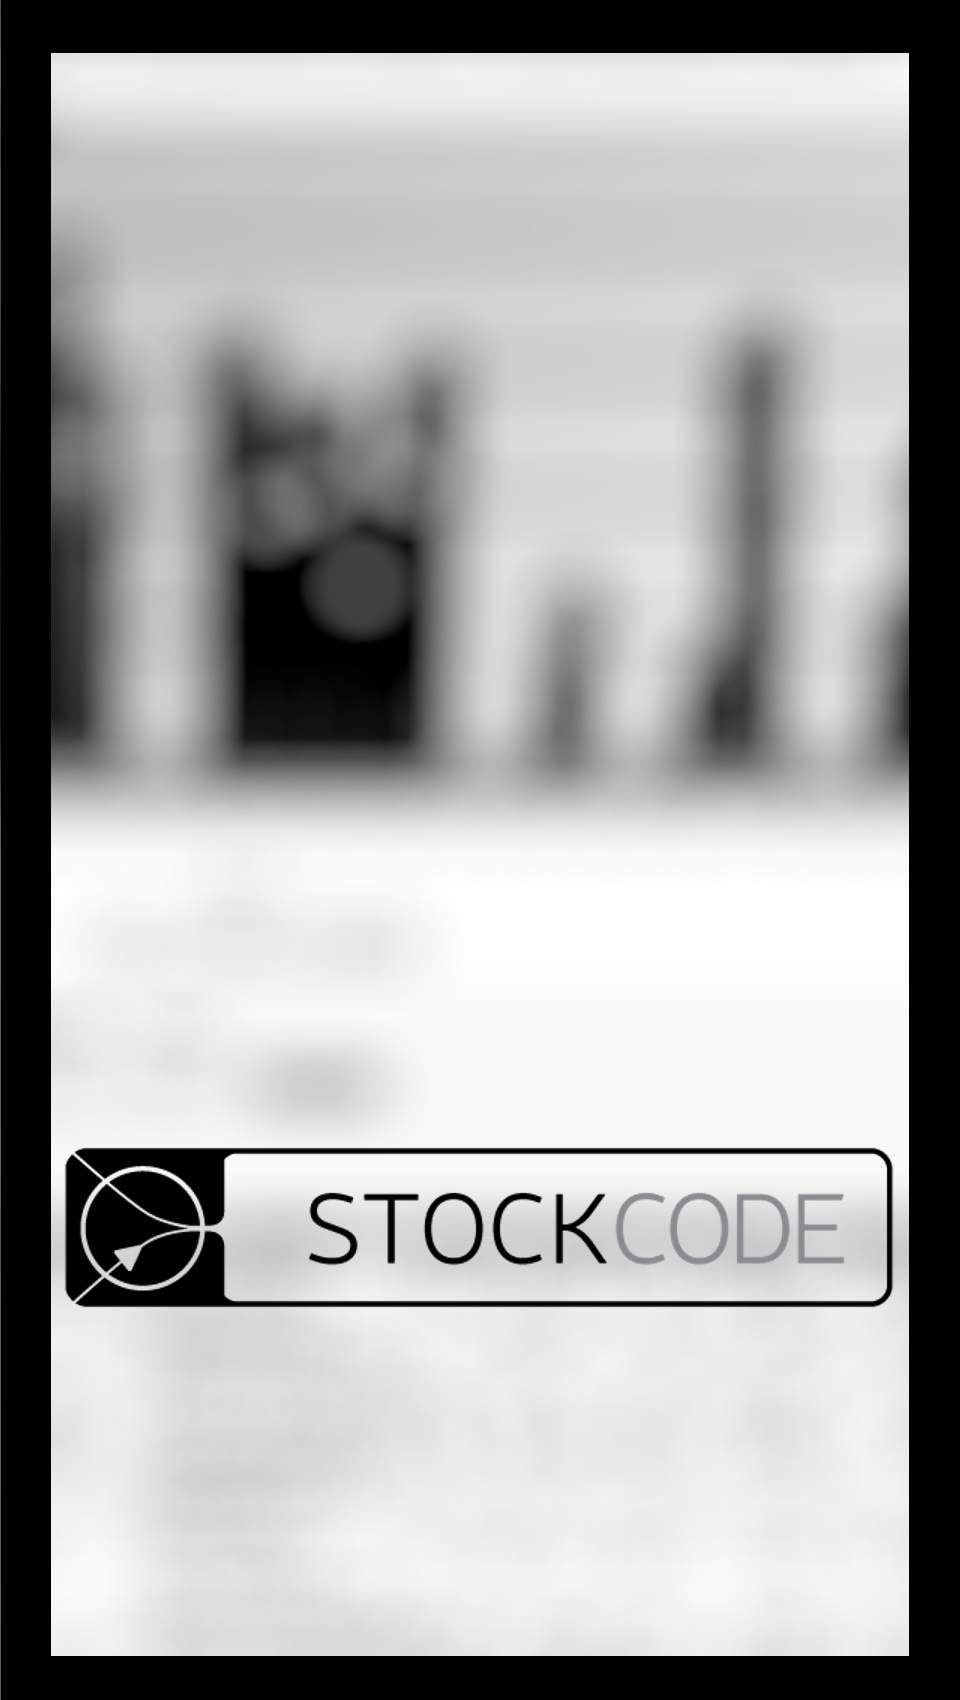 StockCODE